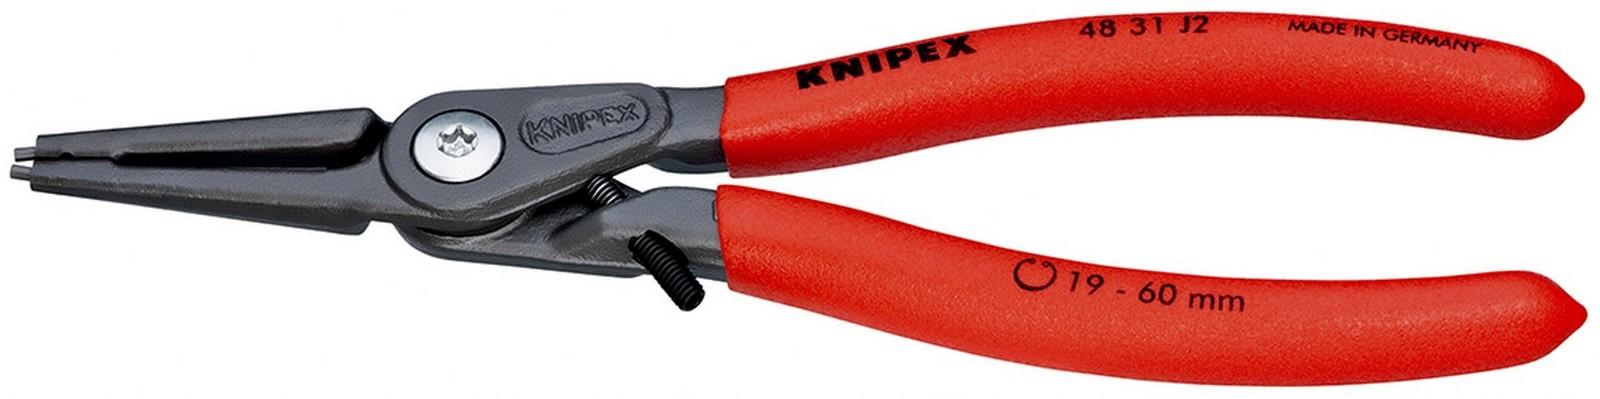 KNIPEX Precizna klešta za unutrašnje sigurnosne prstenove sa graničnikom 180mm 48 31 J2 crvena